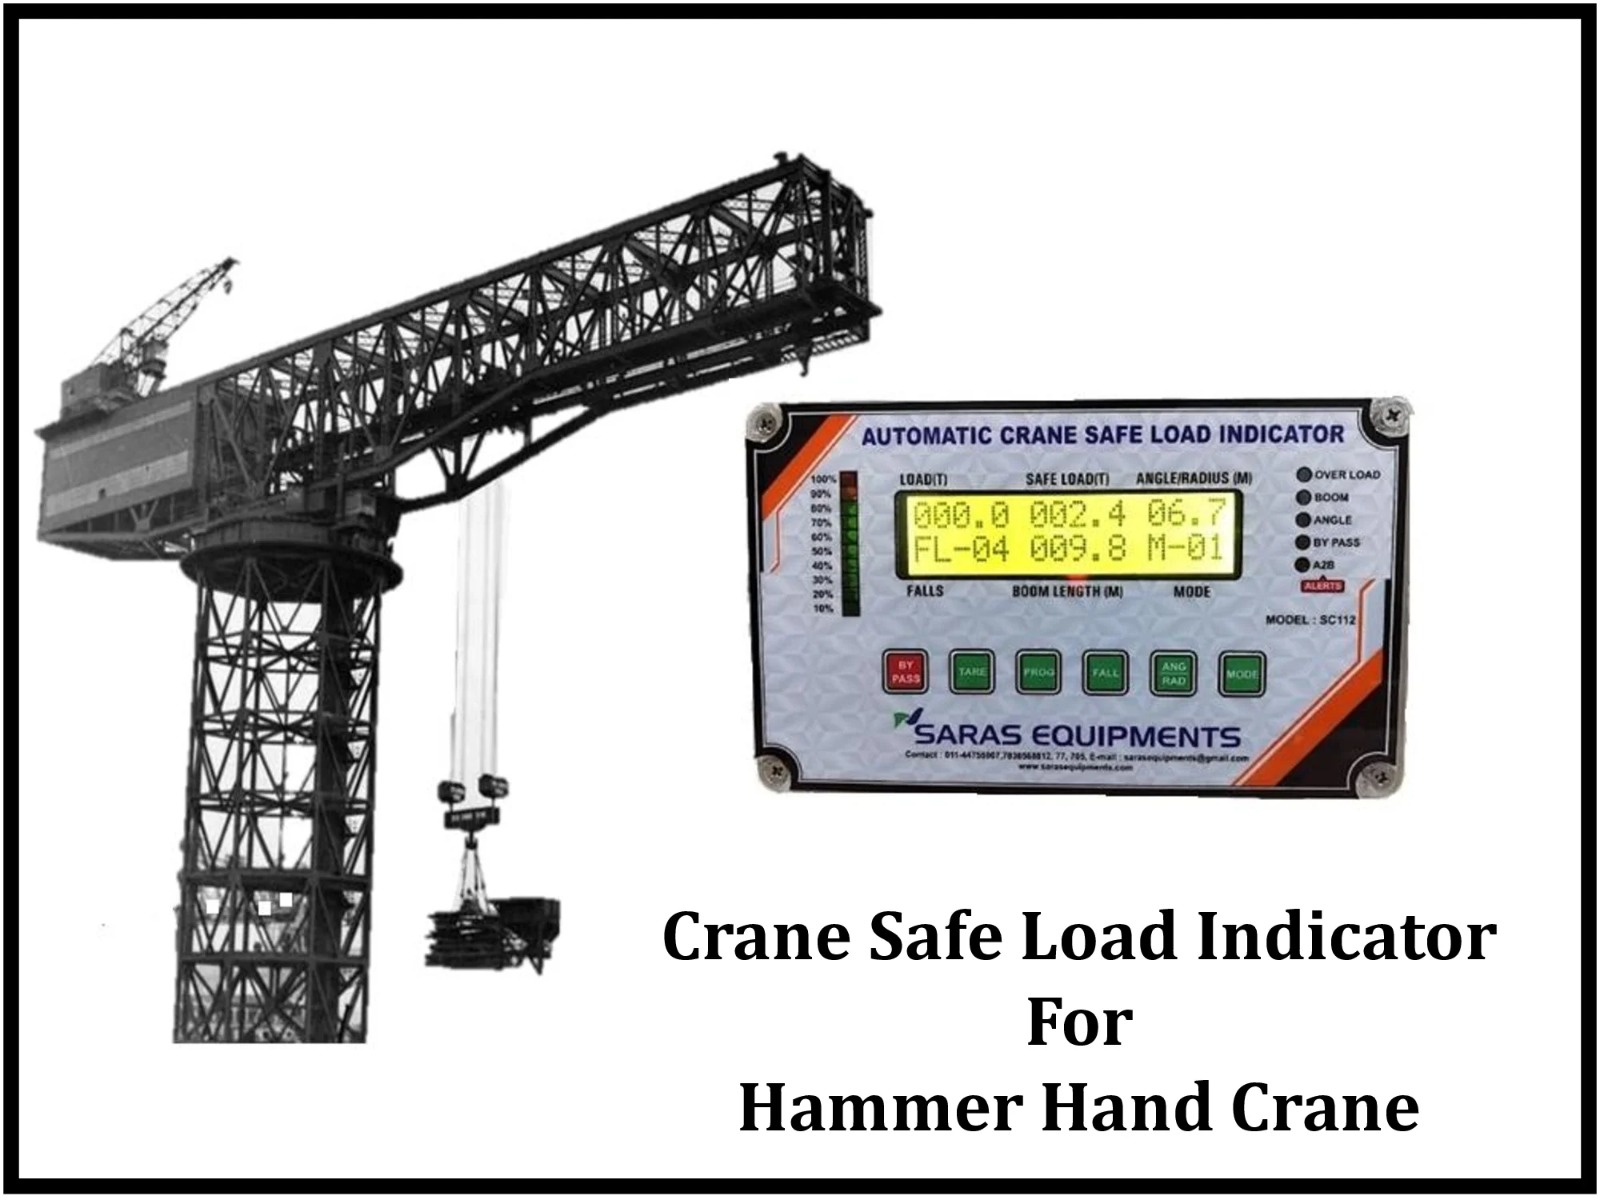 Crane Safe Load Indicator for Hammer Hand Crane